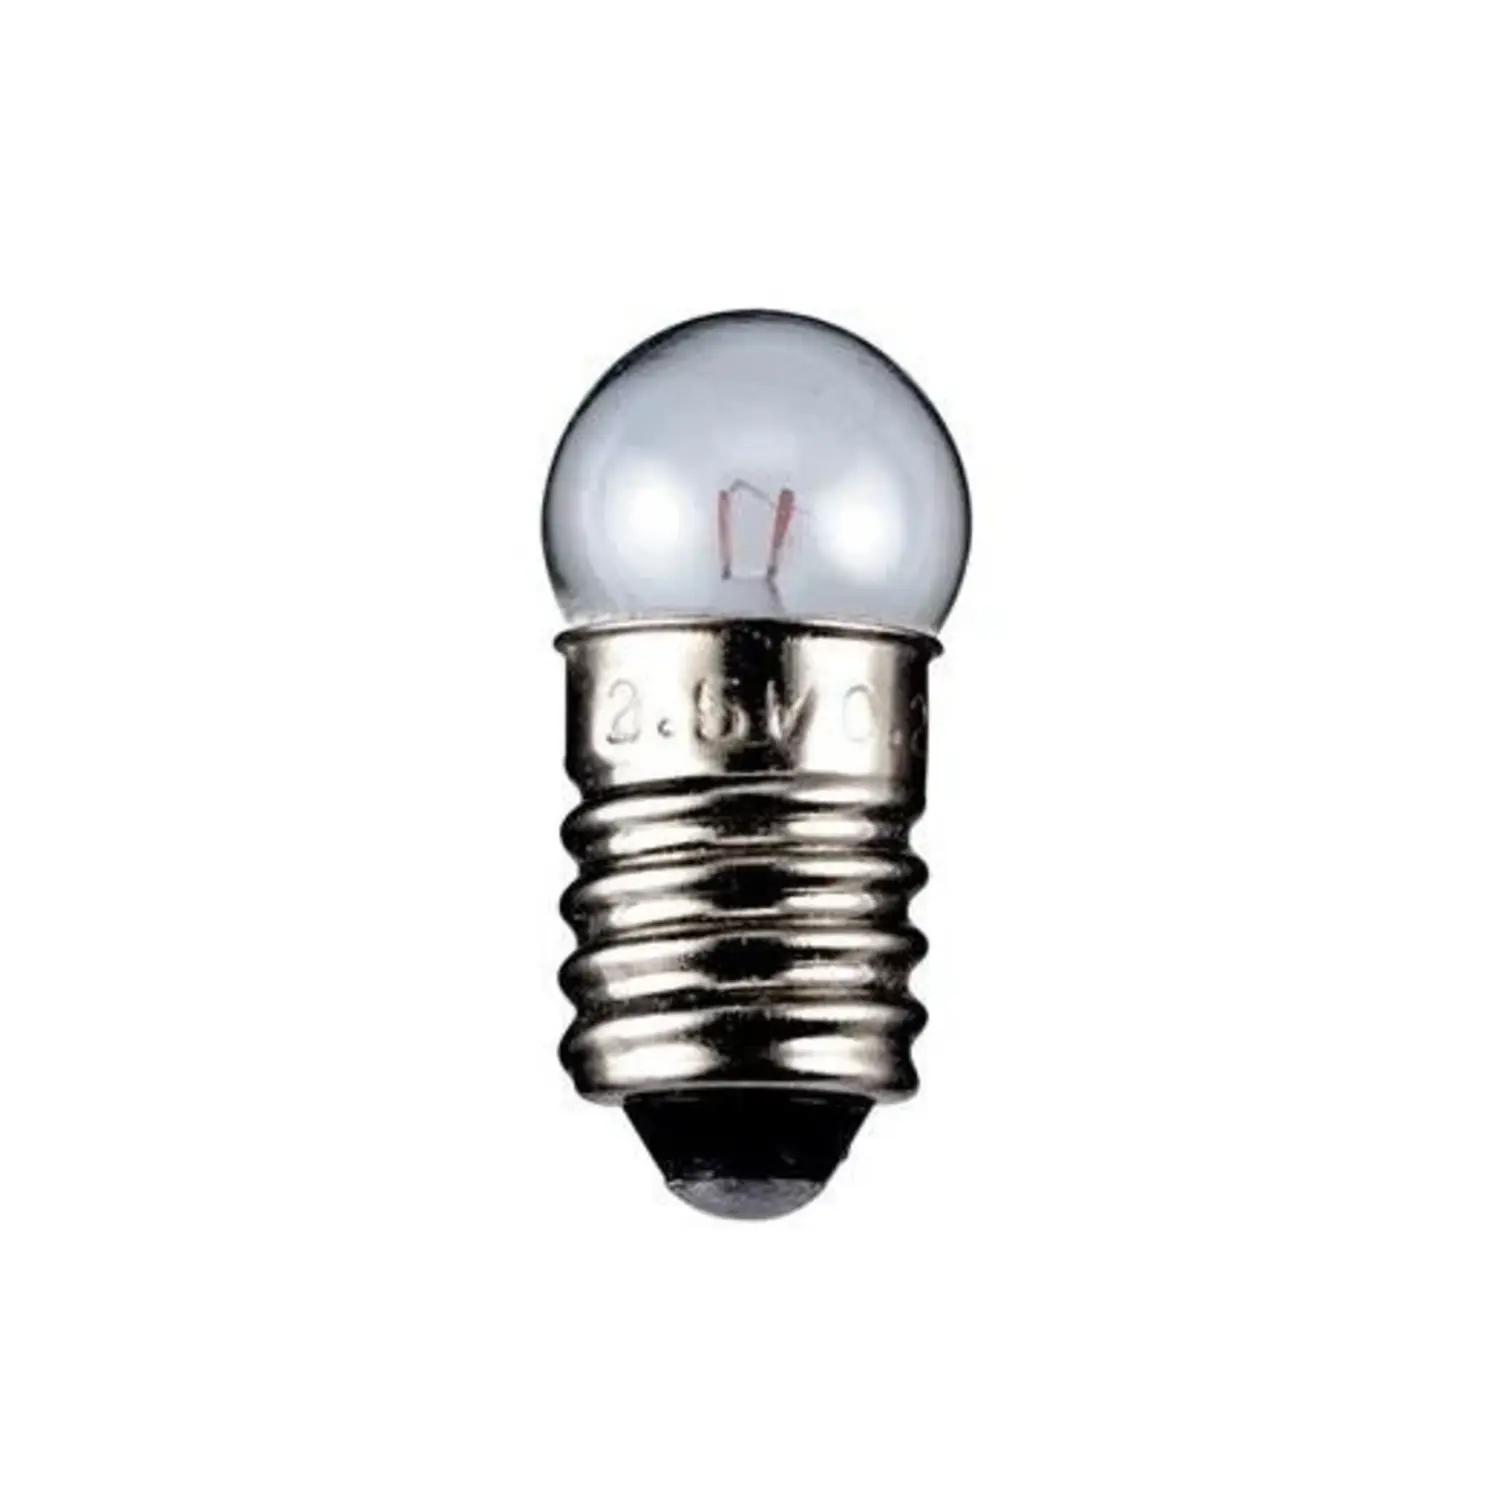 immagine del prodotto lampadina globulare chiara 6 volt trasparente E10 CE 0,60 watt wnt 9579